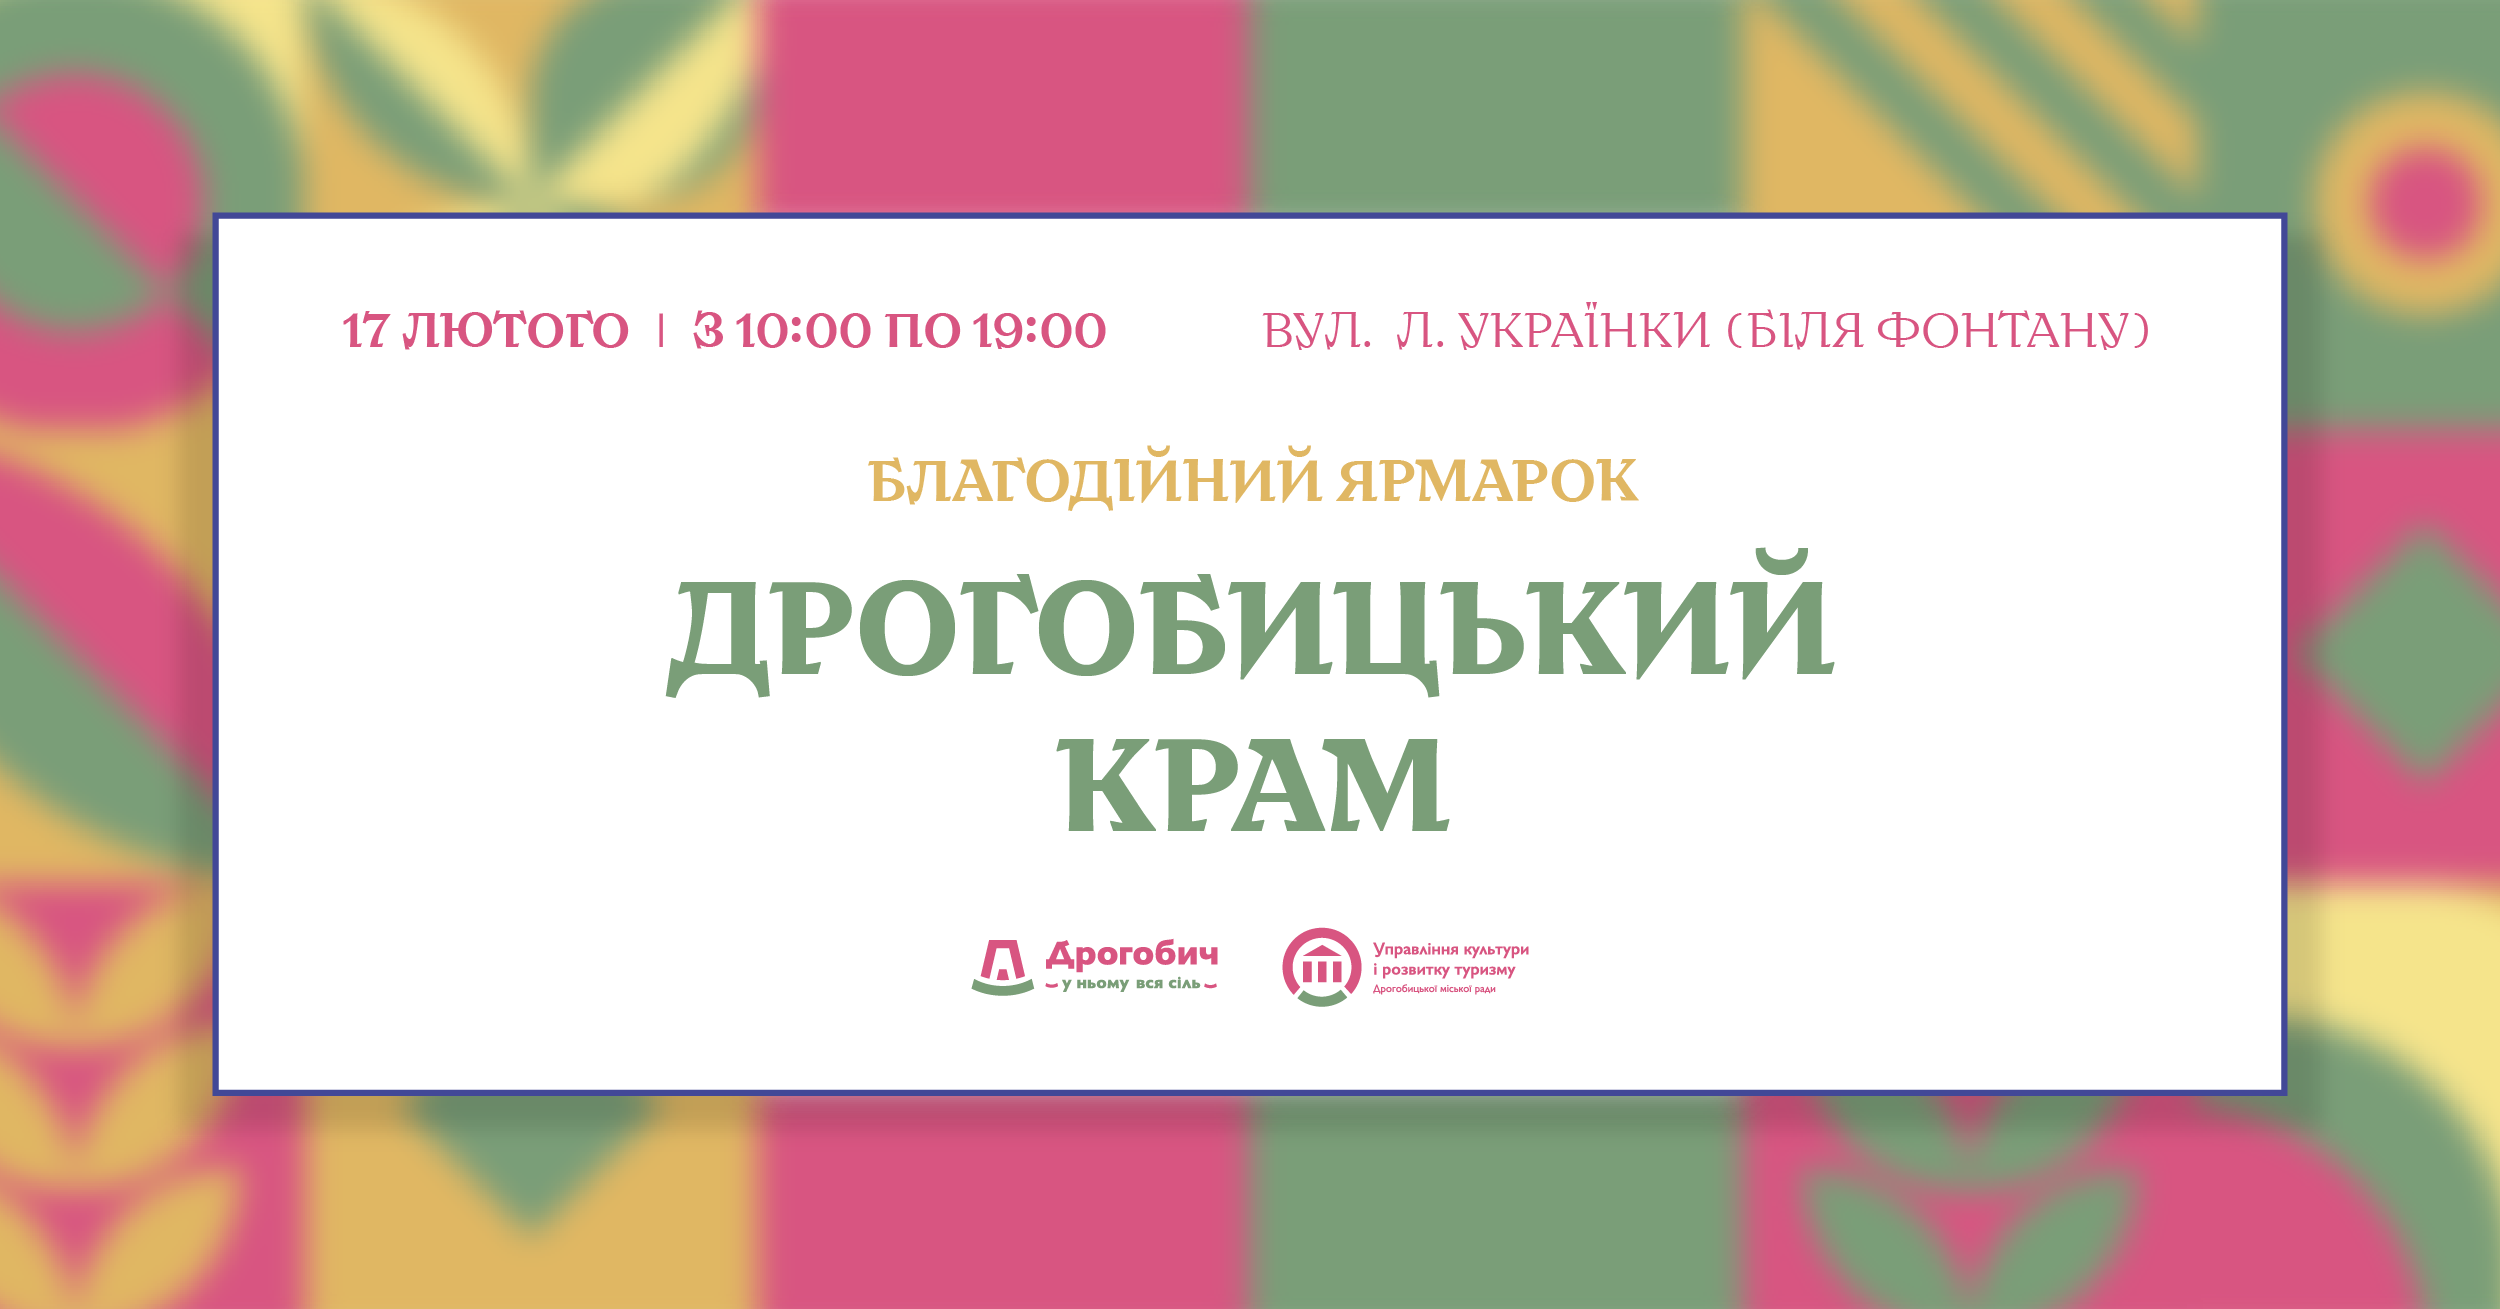 17 лютого у Дрогобичі відбудеться благодійний ярмарок на підтримку ЗСУ